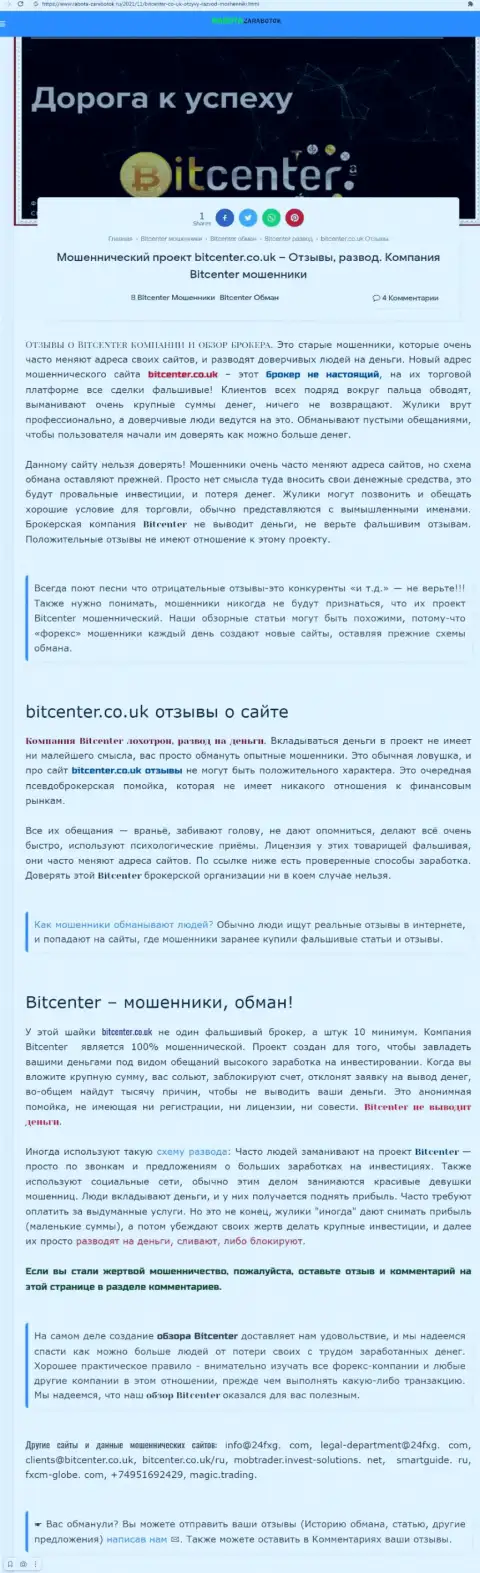 Bit Center - это компания, взаимодействие с которой приносит только убытки (обзор)